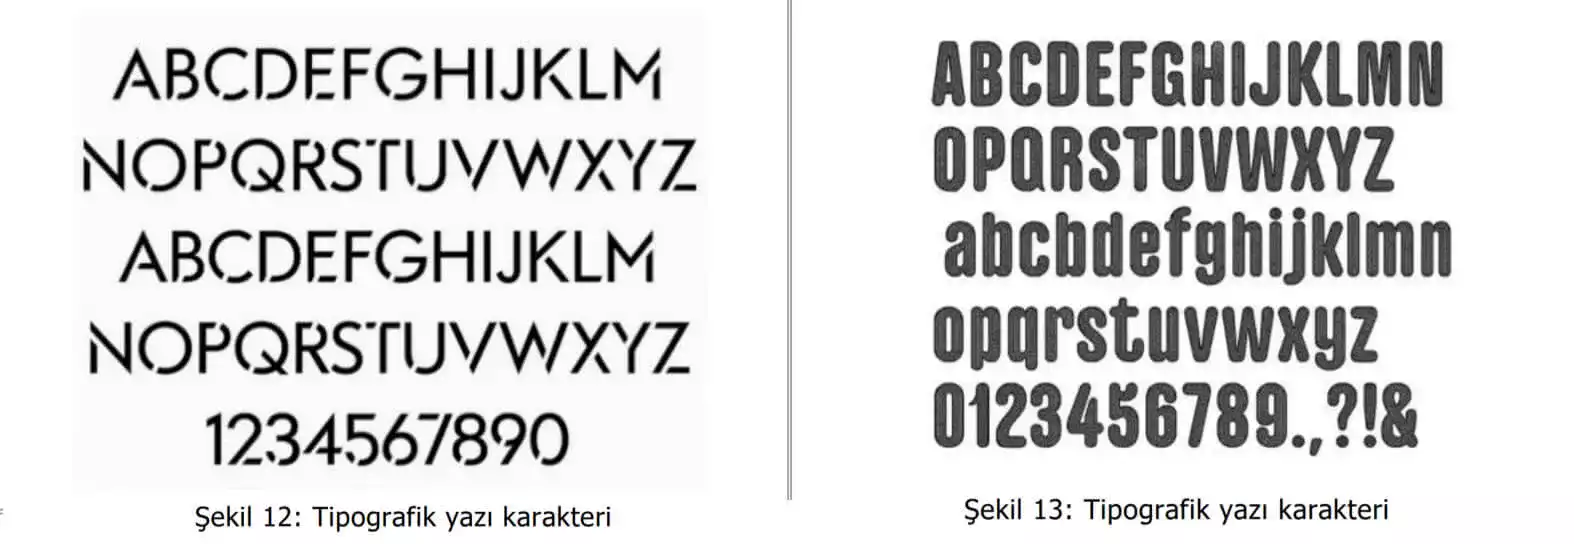 tipografik yazı karakter örnekleri-Antalya Tasarım